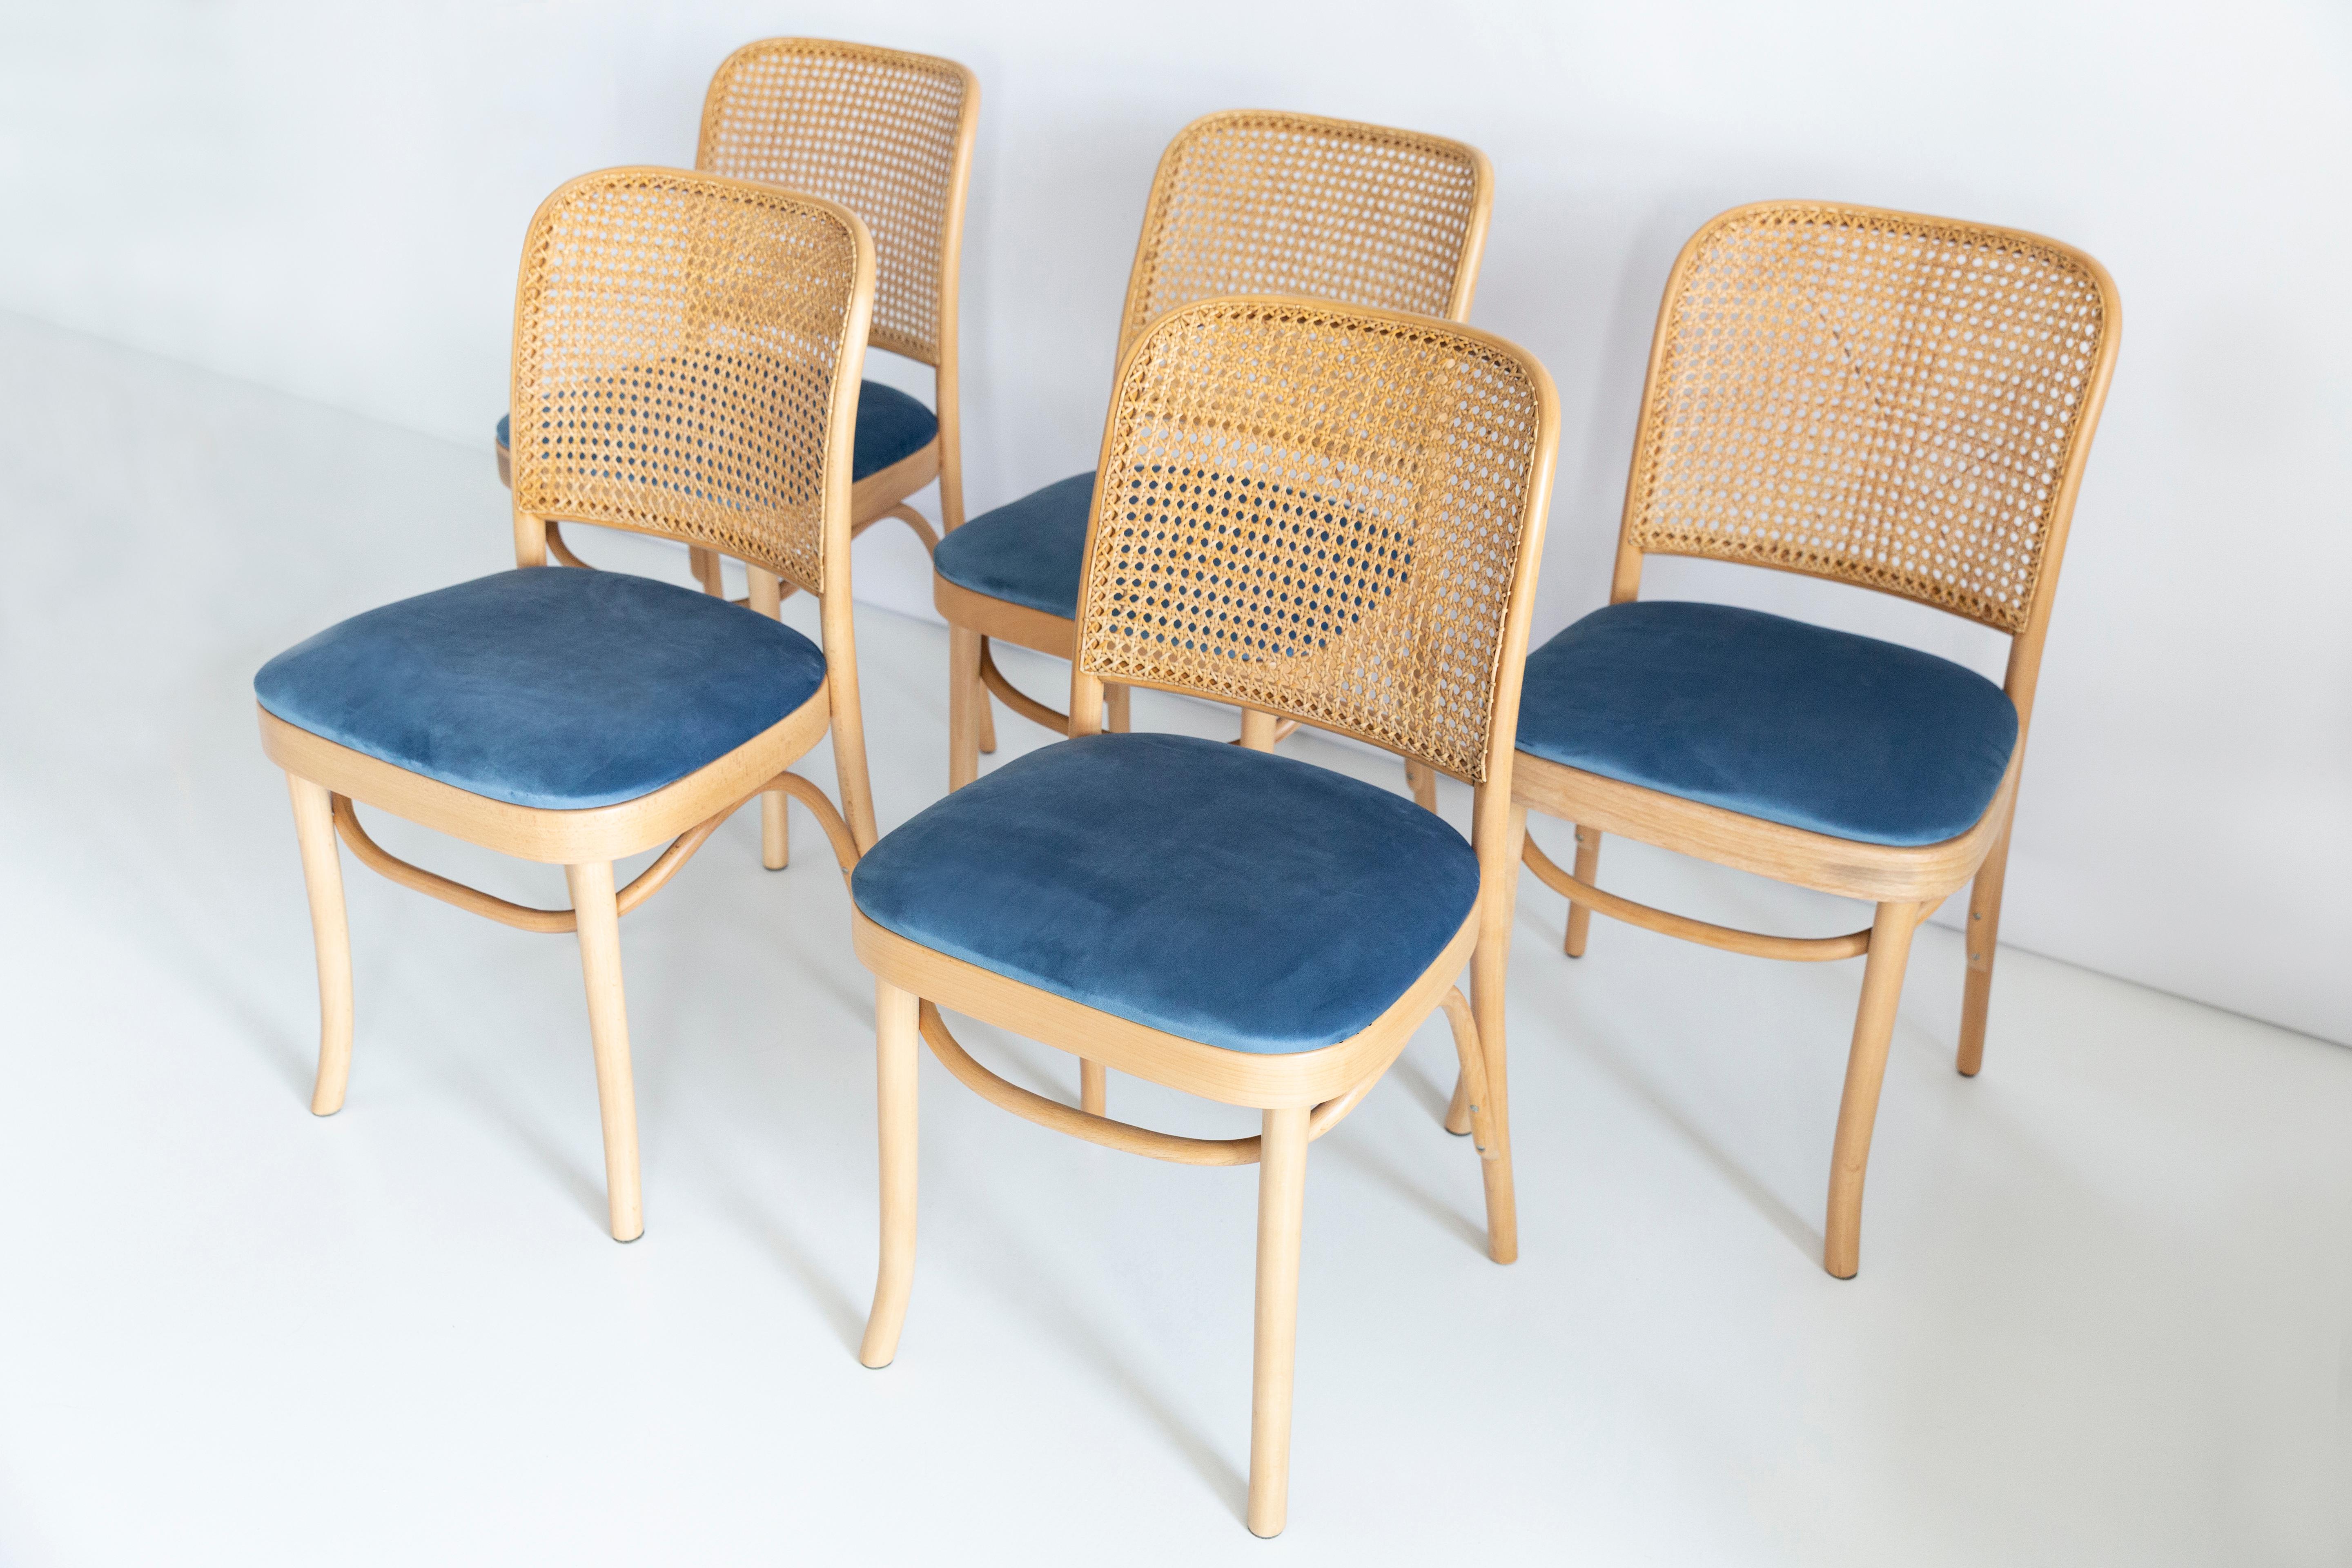 Ein Satz von 5 Stühlen aus Rattan und Holz. Die Möbel wurden von Helena und Jerzy Kurmanowicz entworfen. Sie wurden in der Thonet Holzverarbeitungsfabrik hergestellt und von uns gründlich renoviert. Die Konstruktion besteht aus Buchenholz, das mit